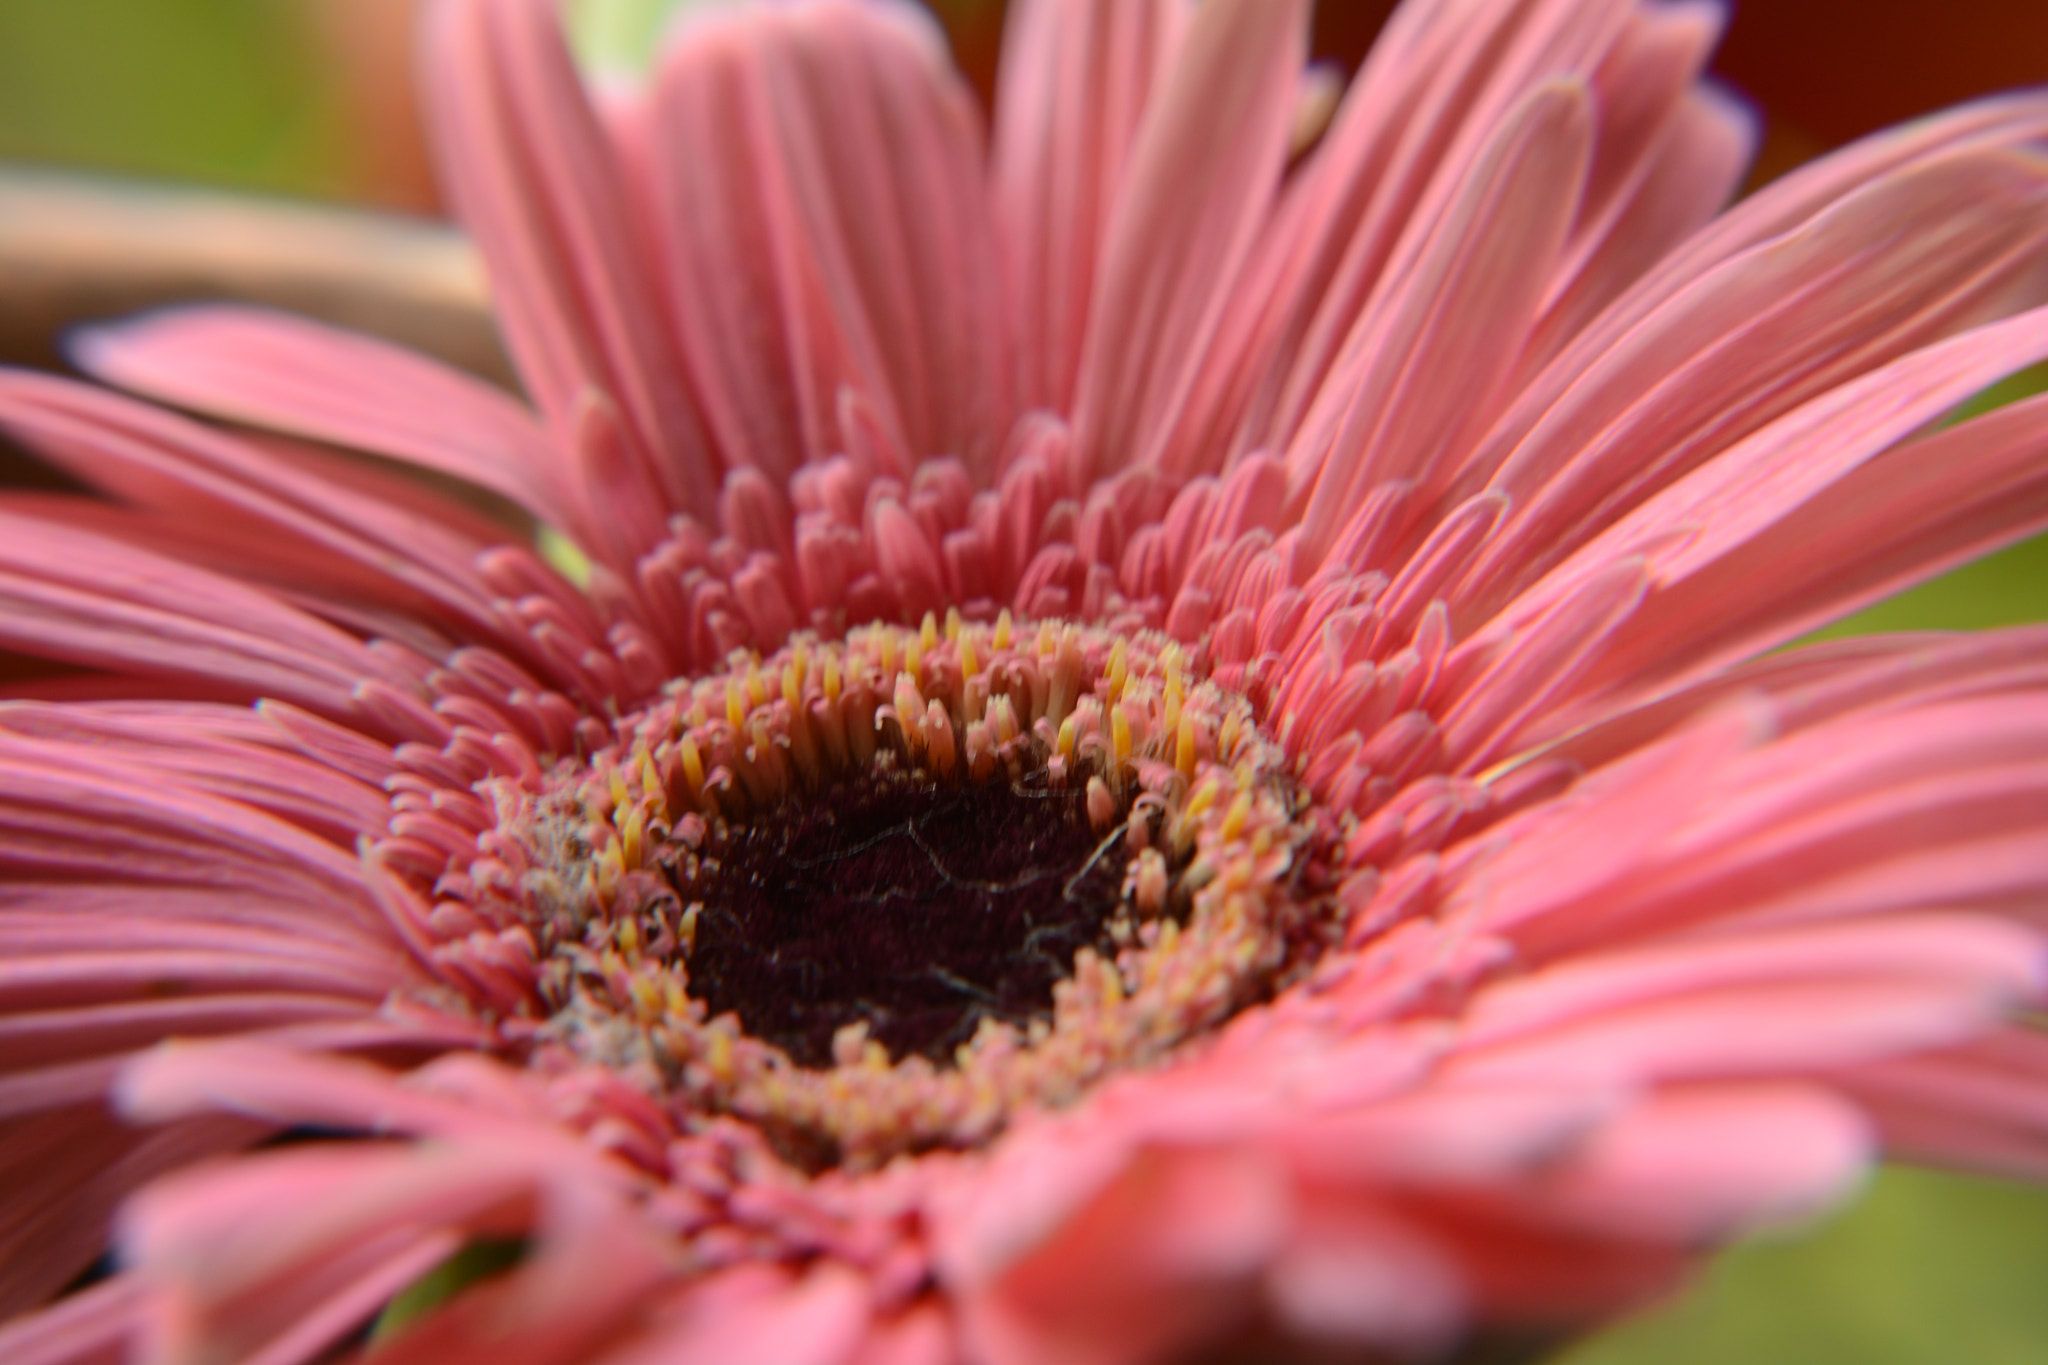 Nikon AF-S DX Nikkor 18-140mm F3.5-5.6G ED VR sample photo. Beauty of pink flower photography